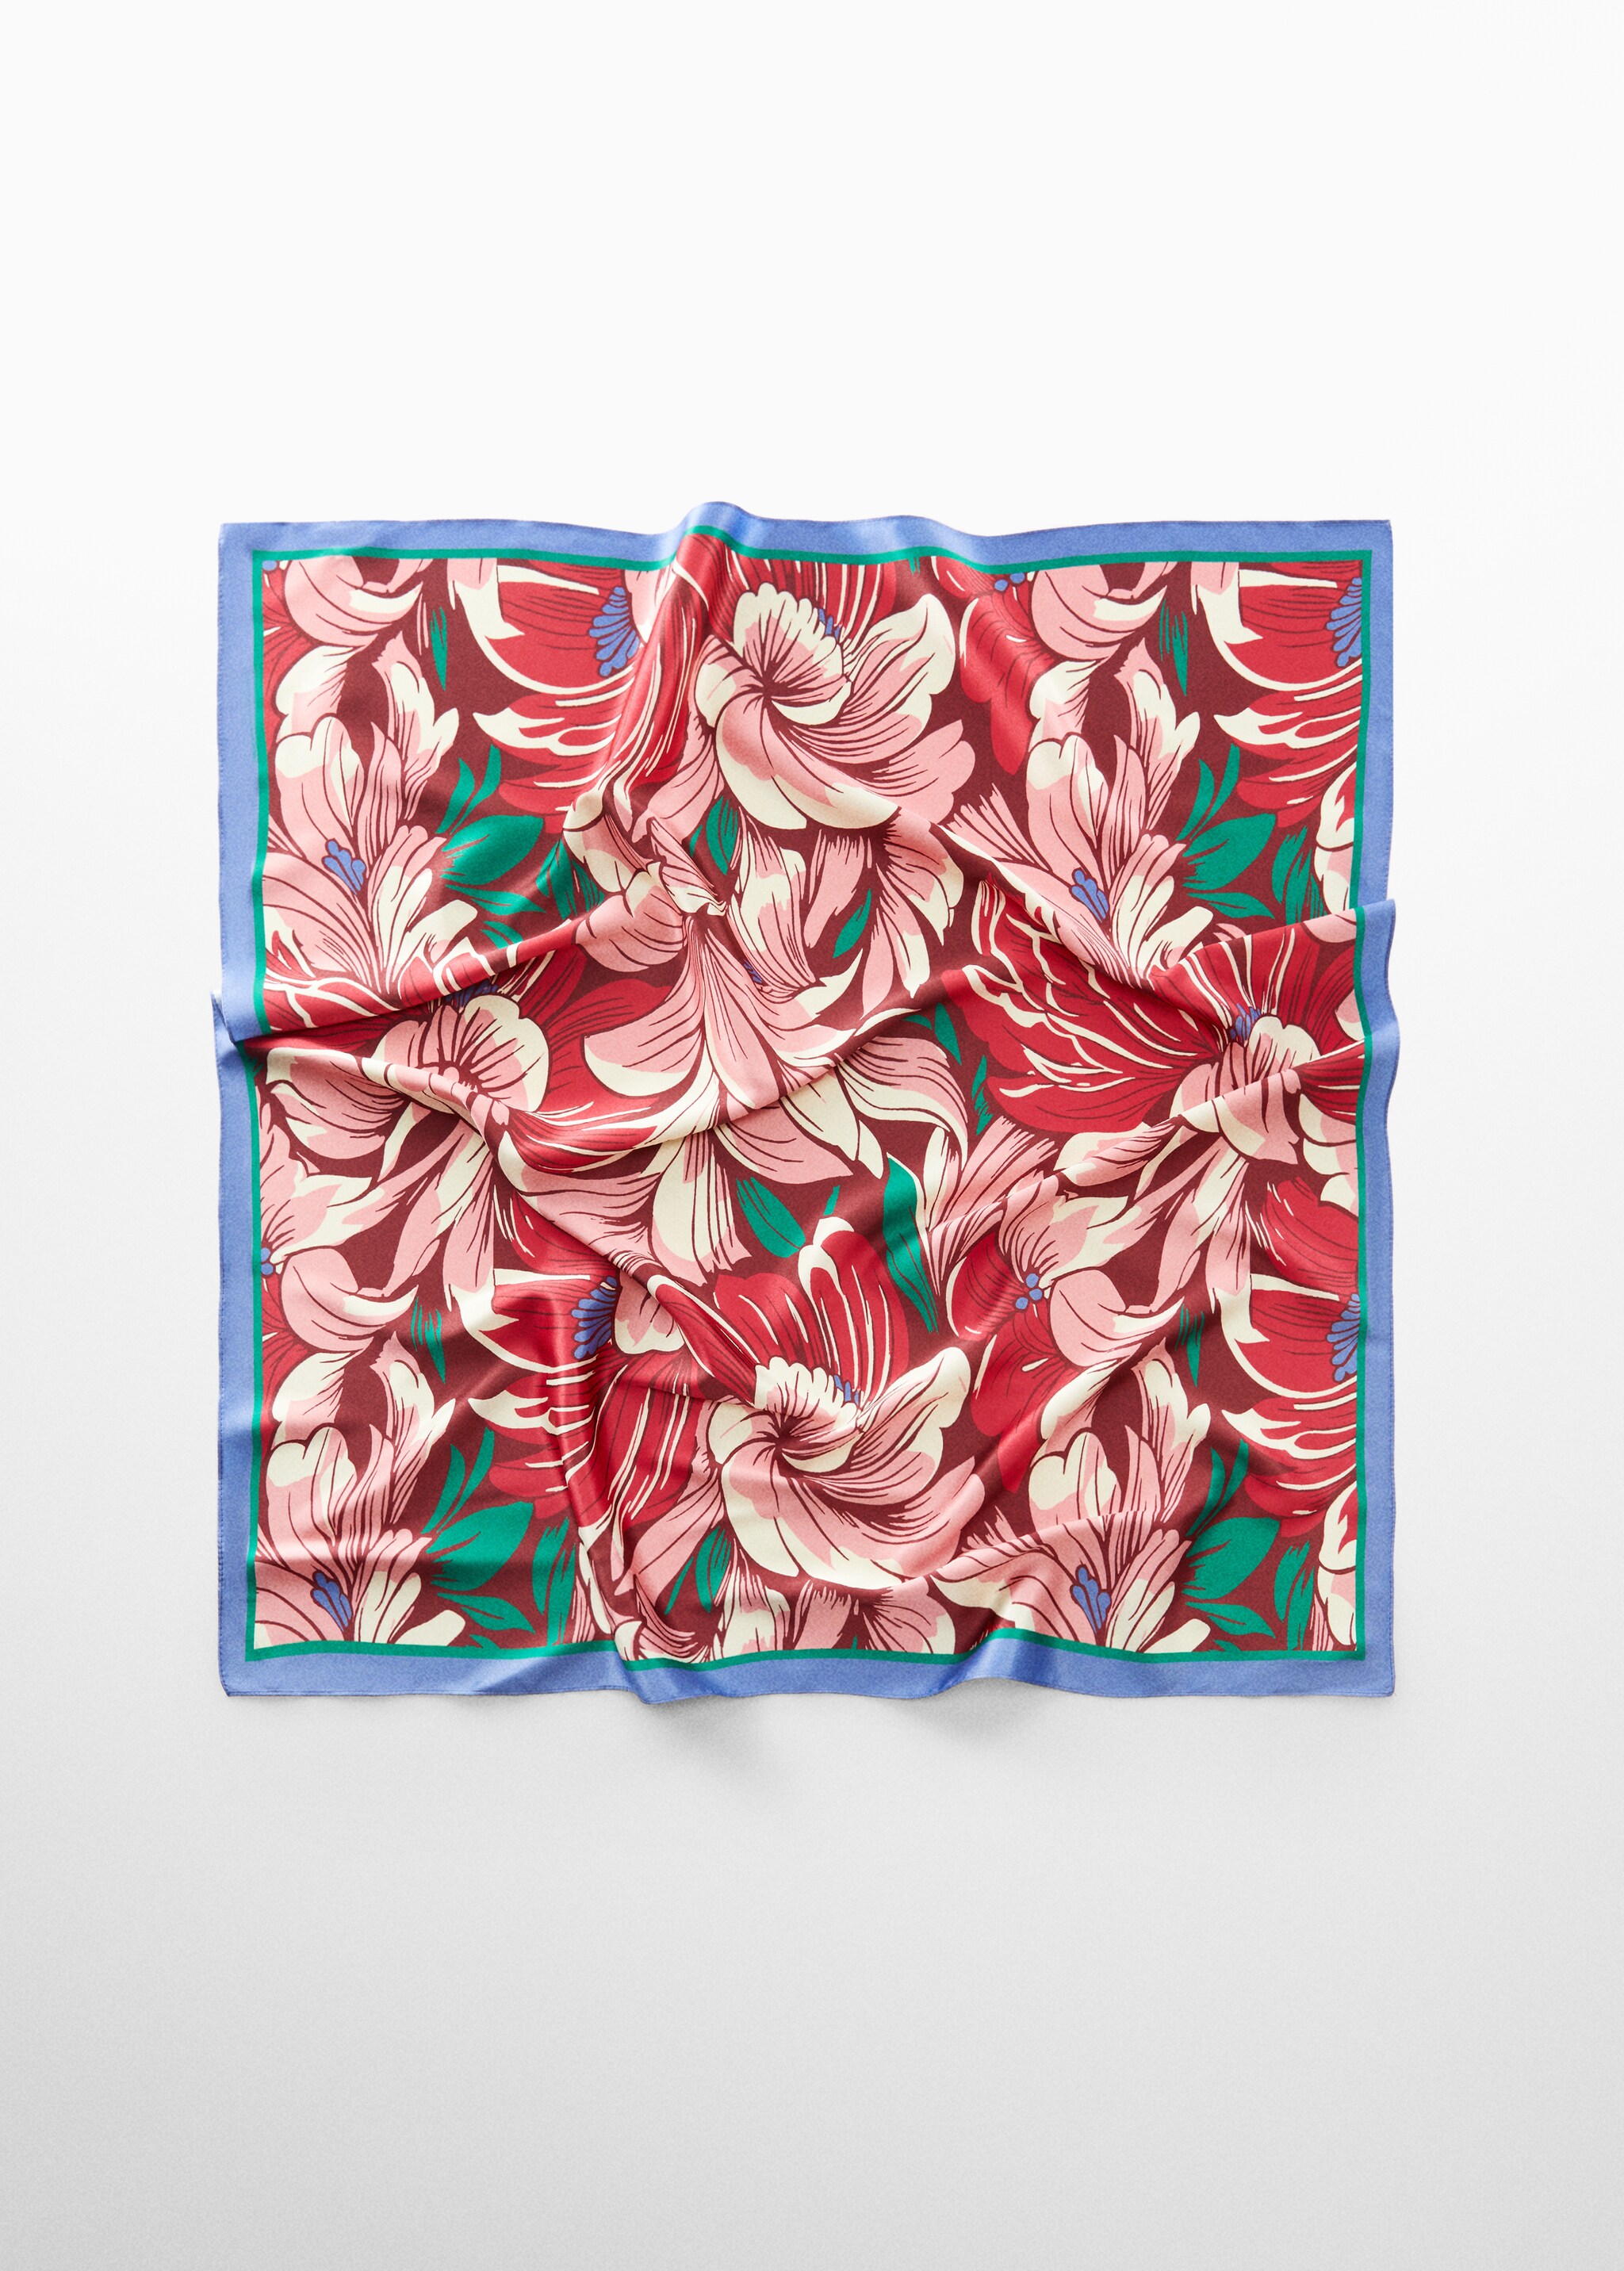 Pañuelo estampado floral - Artículo sin modelo